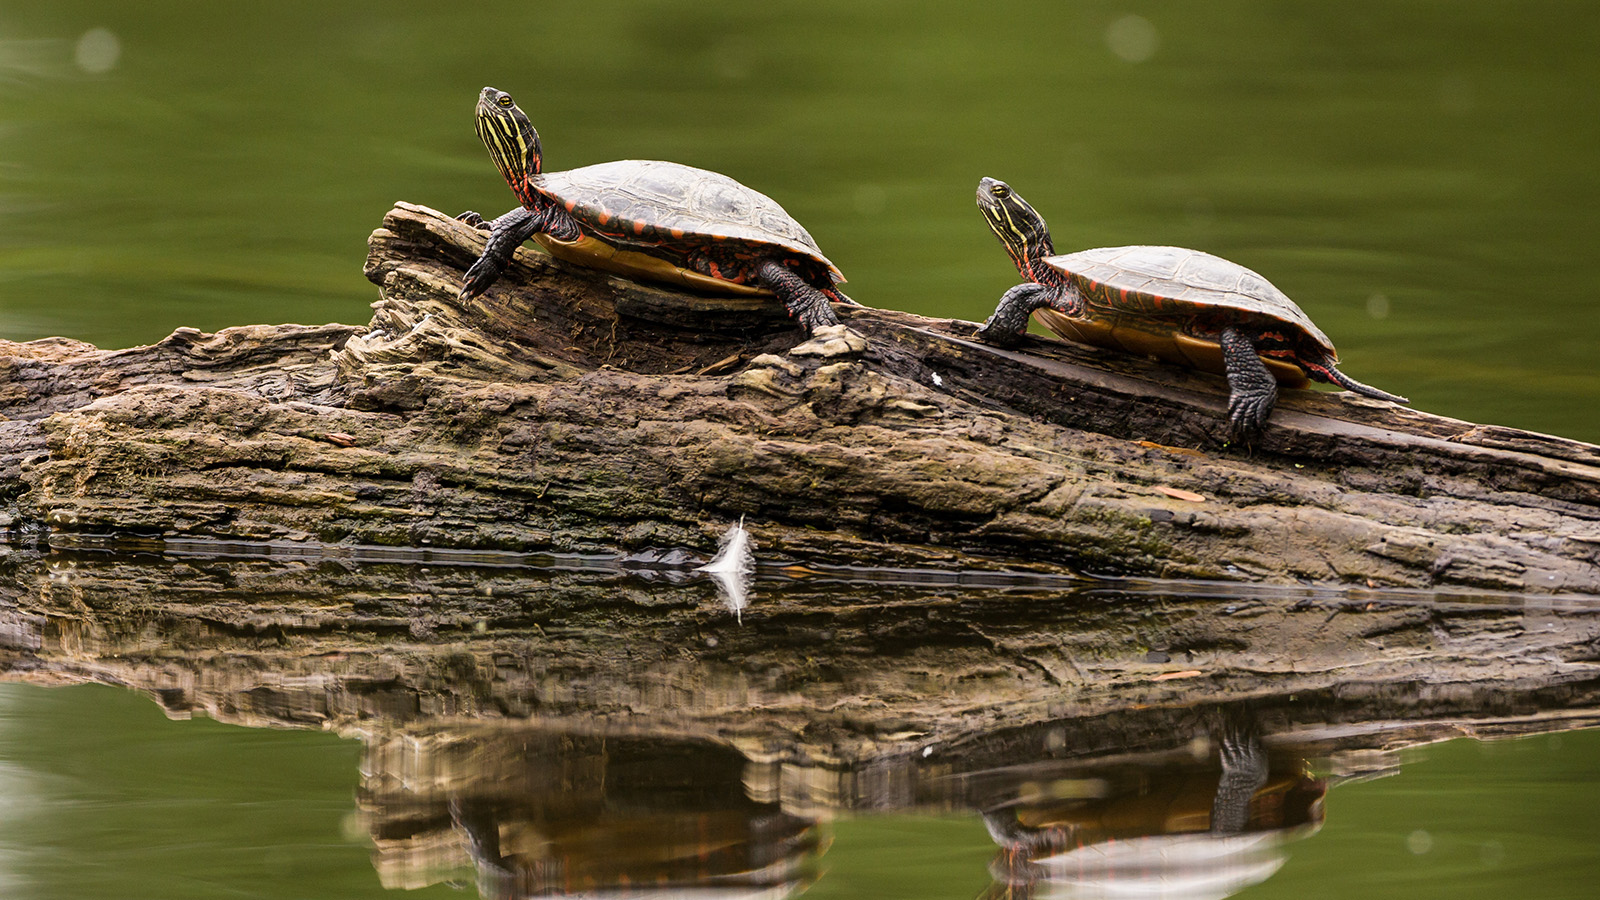 paited turtles on a log